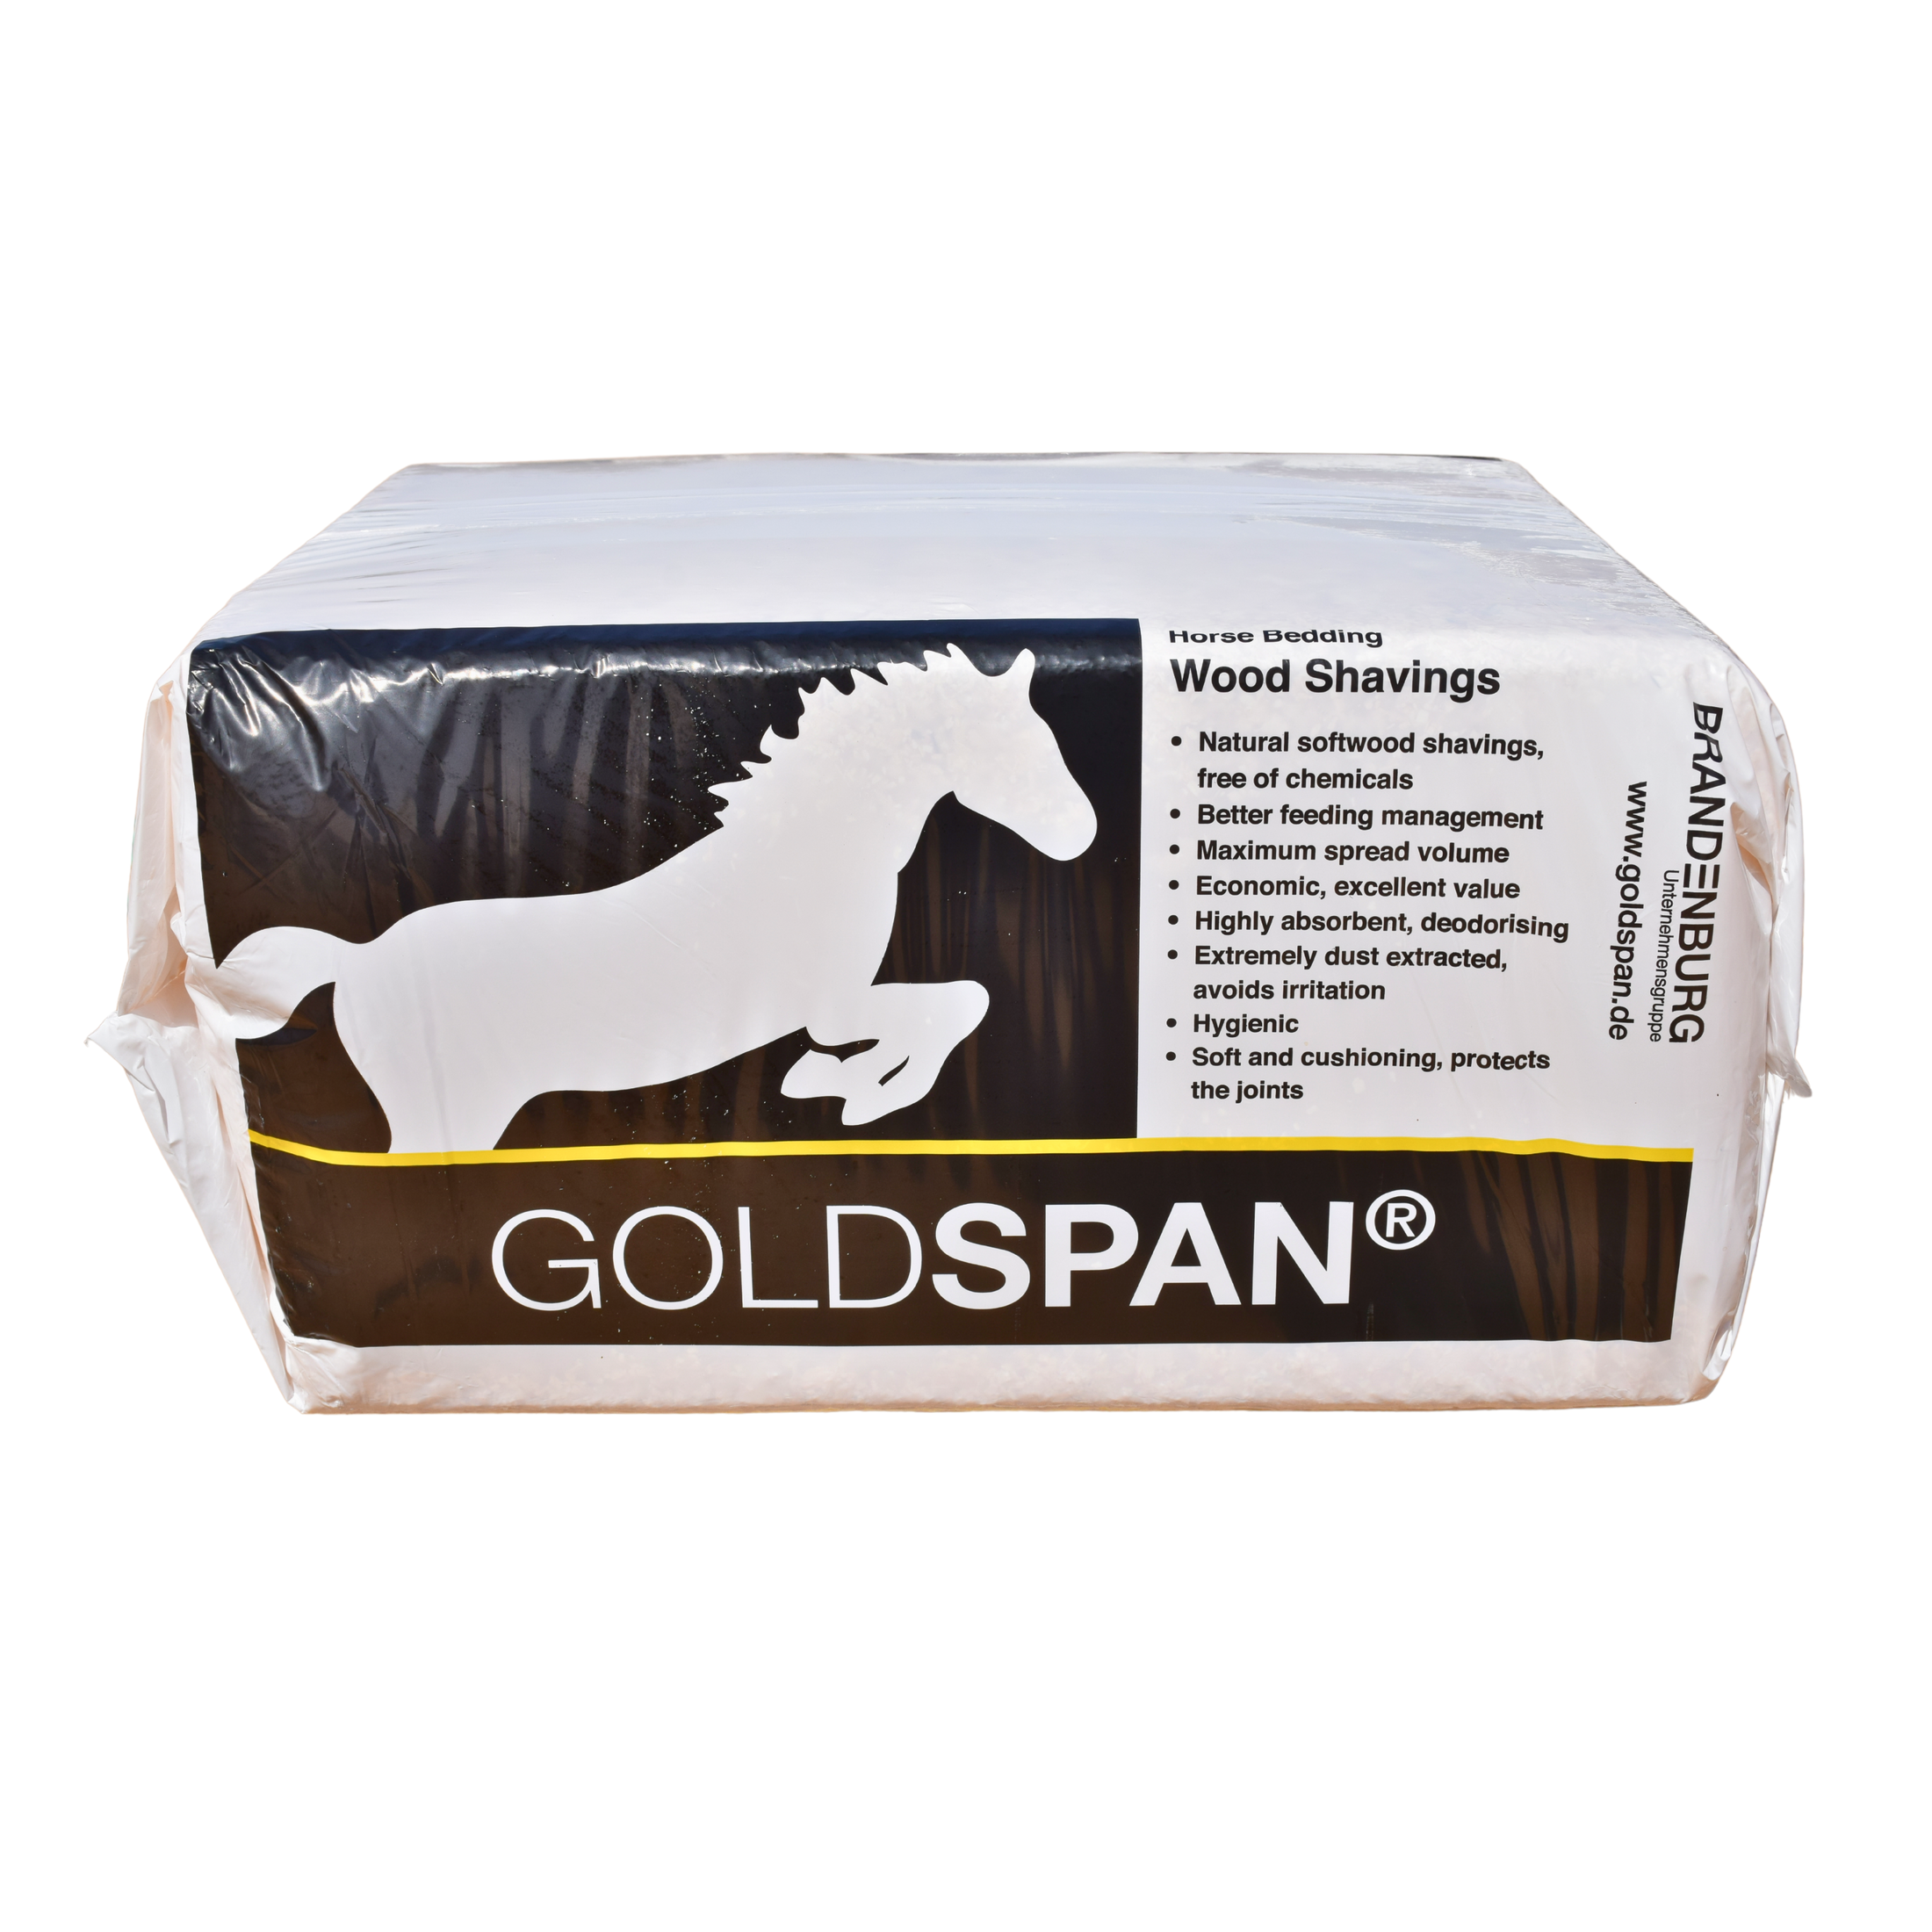 GoldSpan Horse Bedding Wood Shavings